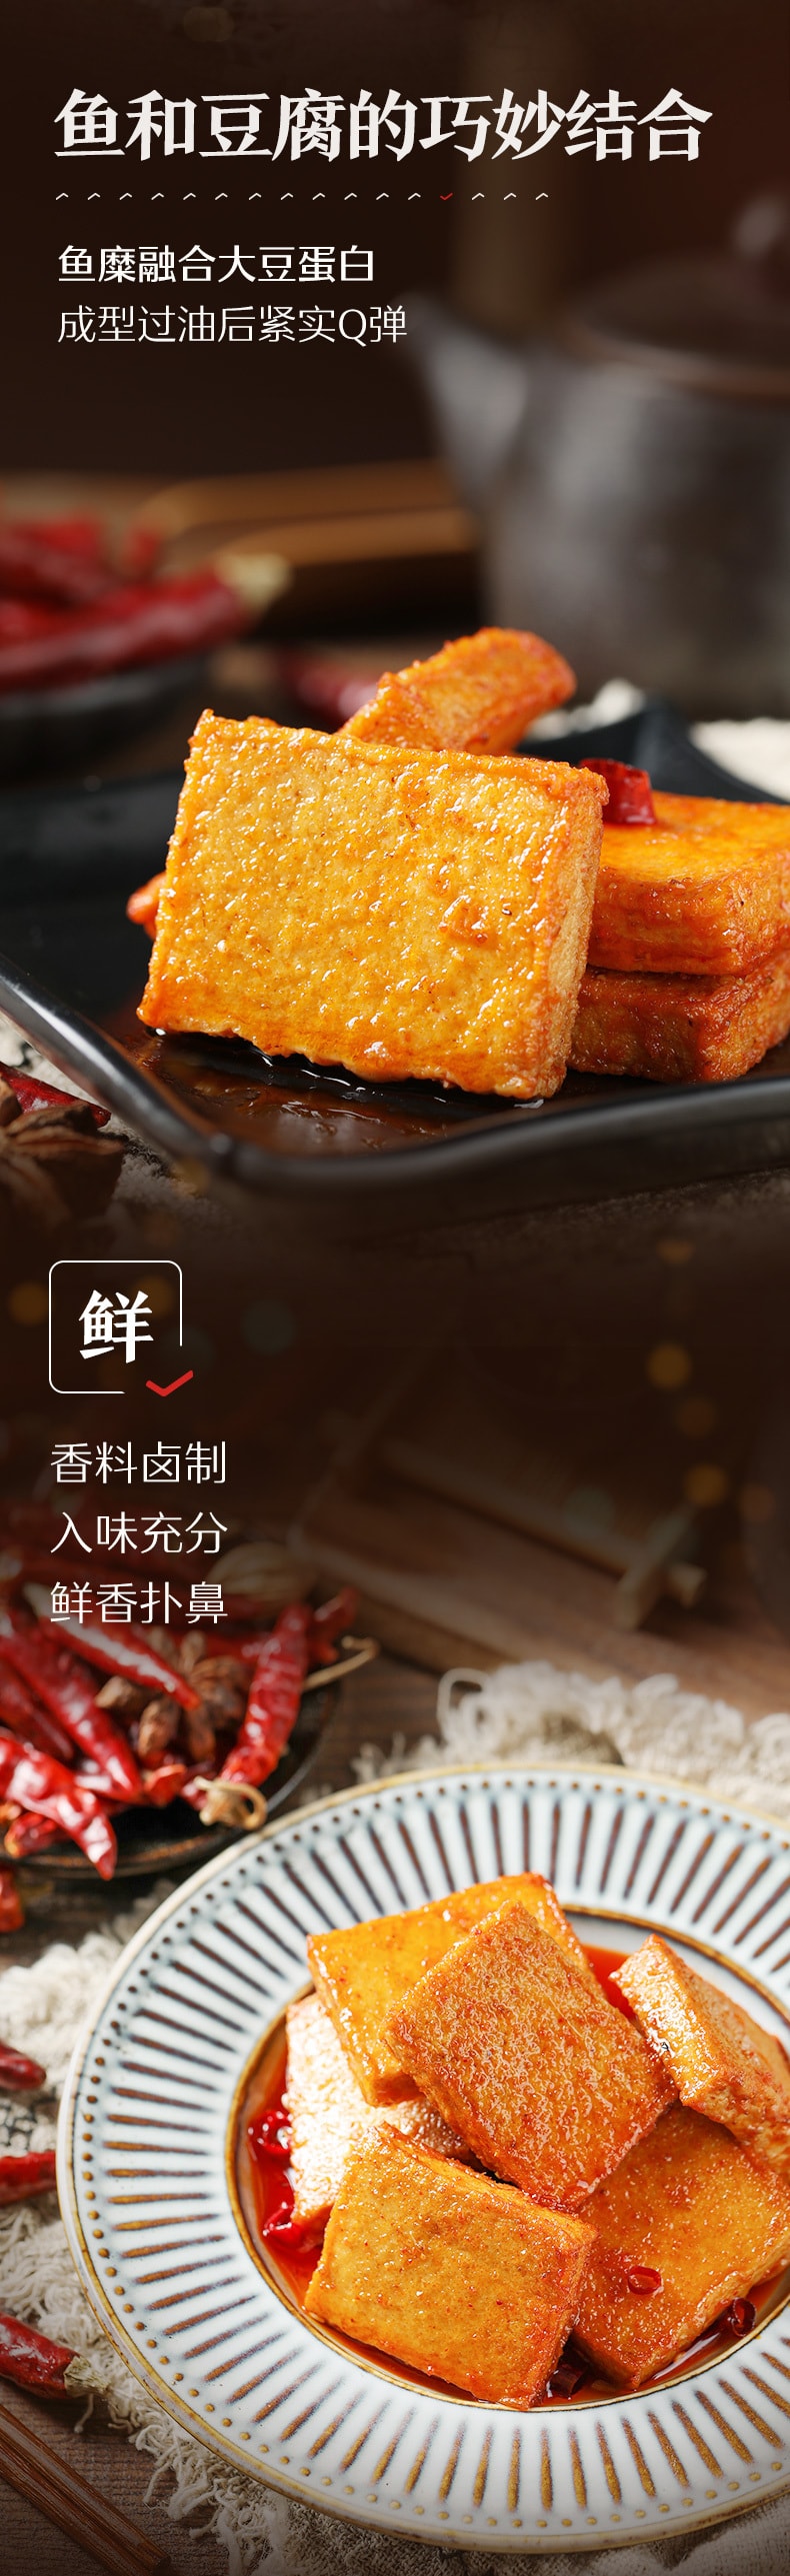 [中國直郵]良品鋪子 BESTORE 魚豆腐 燒烤風味 170g 1袋